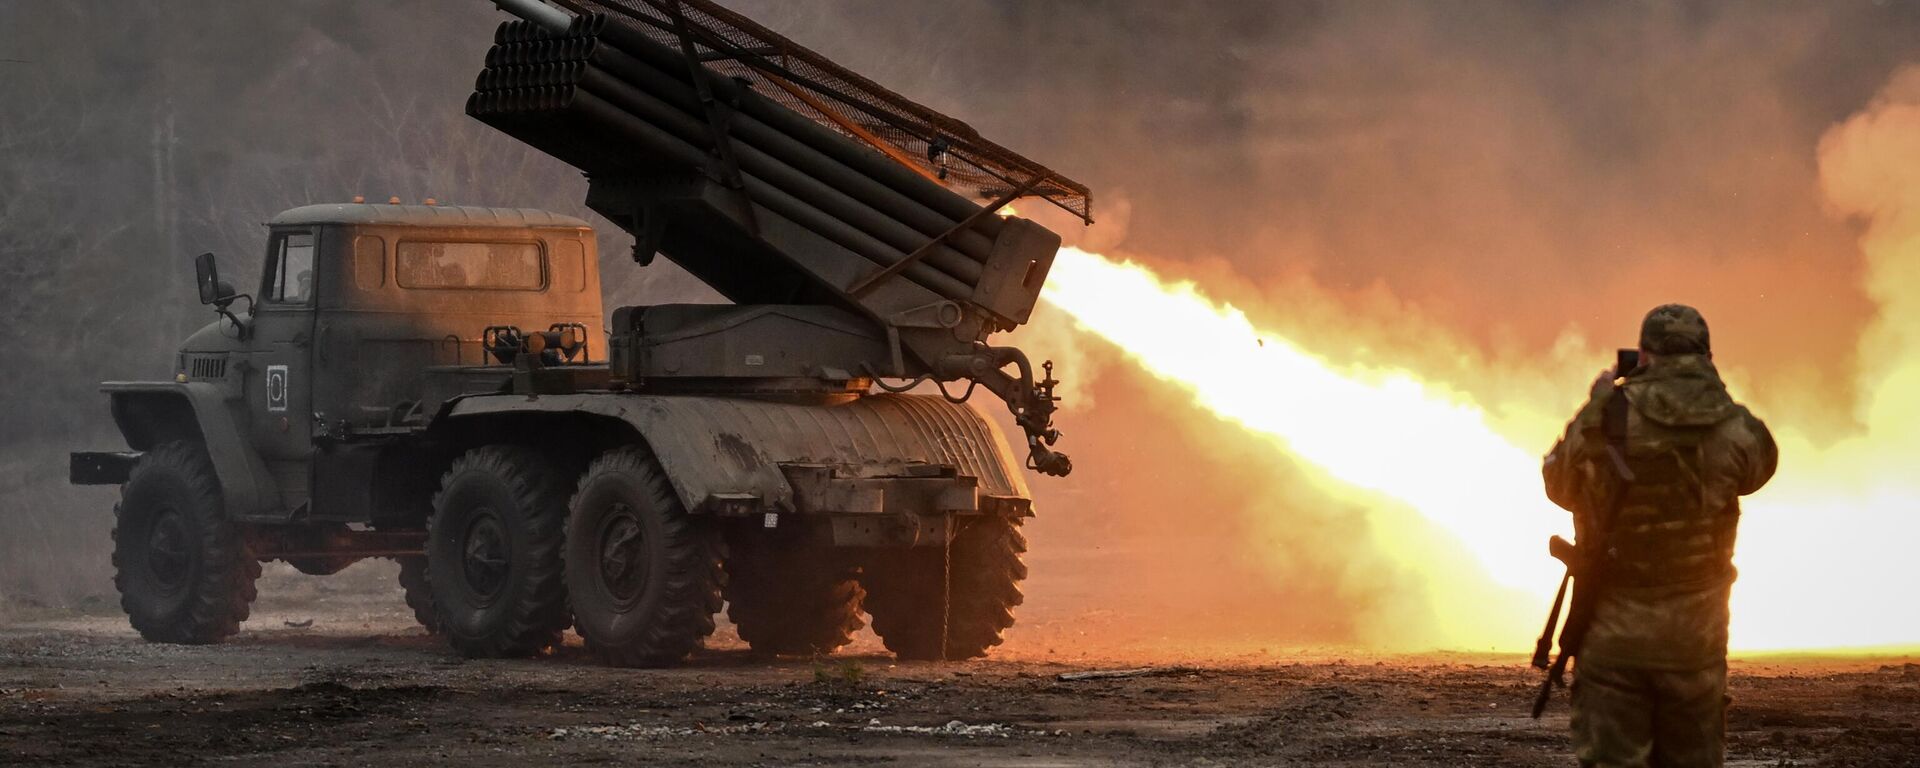 Hệ thống tên lửa phóng loạt BM-21 Grad của quân khu “Trung tâm” bắn vào các vị trí trong quân đội Ukraina theo hướng Krasnyi Lyman trong chiến dịch quân sự đặc biệt. - Sputnik Việt Nam, 1920, 08.03.2024